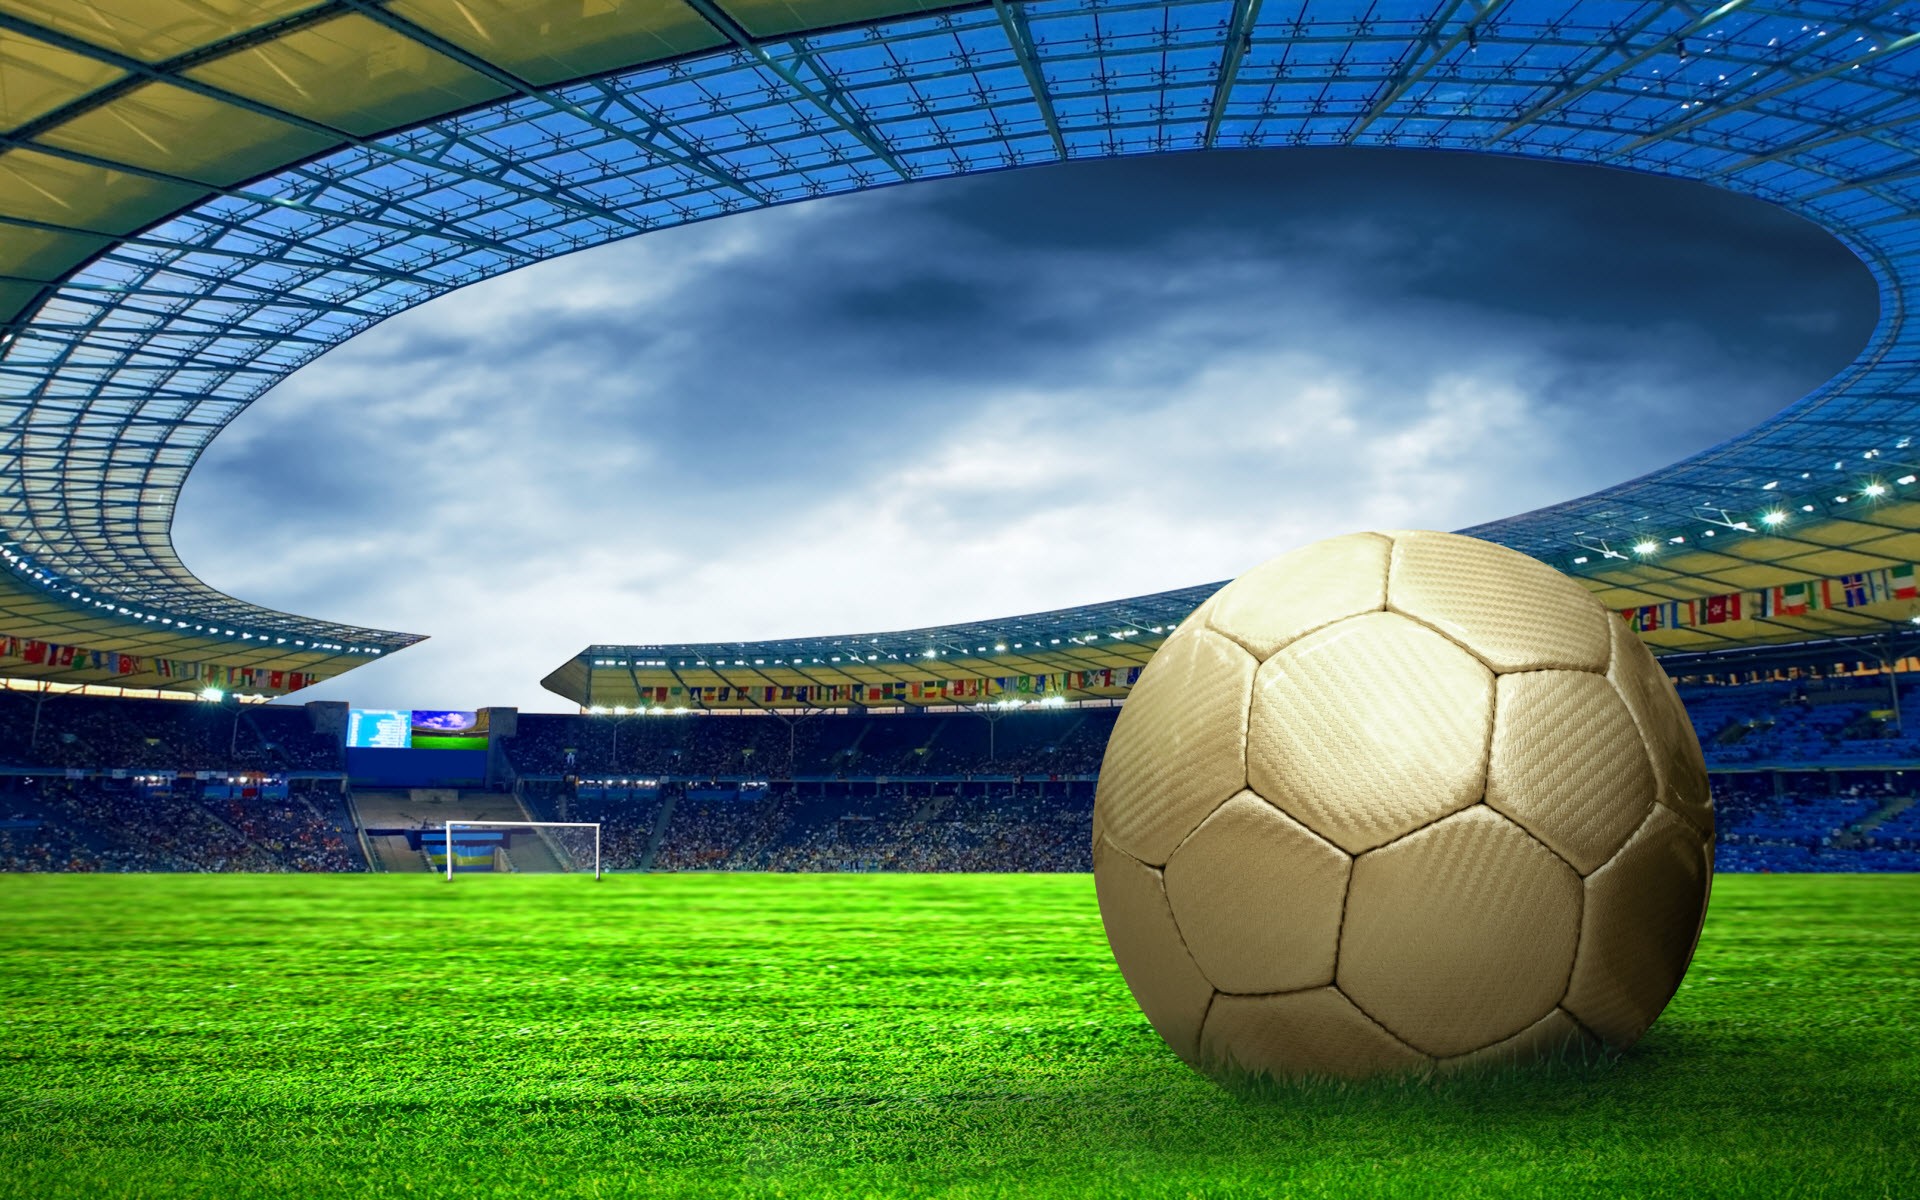 futebol wallpaper,fútbol americano,balón de fútbol,estadio de fútbol específico,estadio,atmósfera